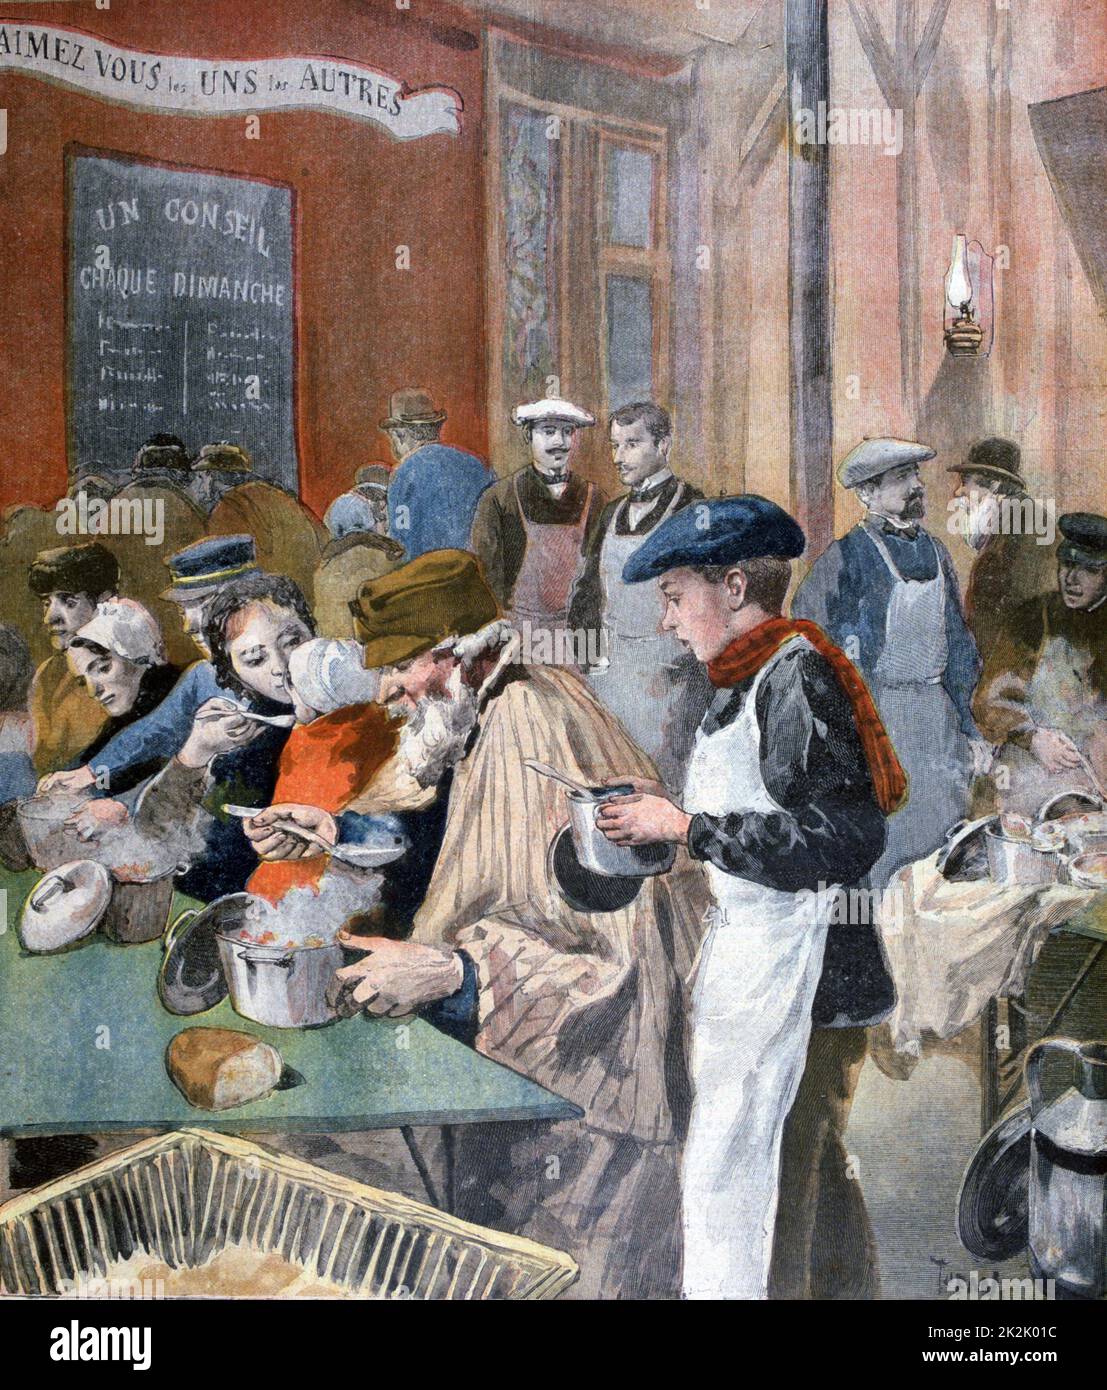 Studenten geben sich Zeit, als Kellner in einer Pariser Suppenküche zu fungieren. Aus Dem 'Le Petit Journal', Paris, 5. Februar 1894. Stockfoto